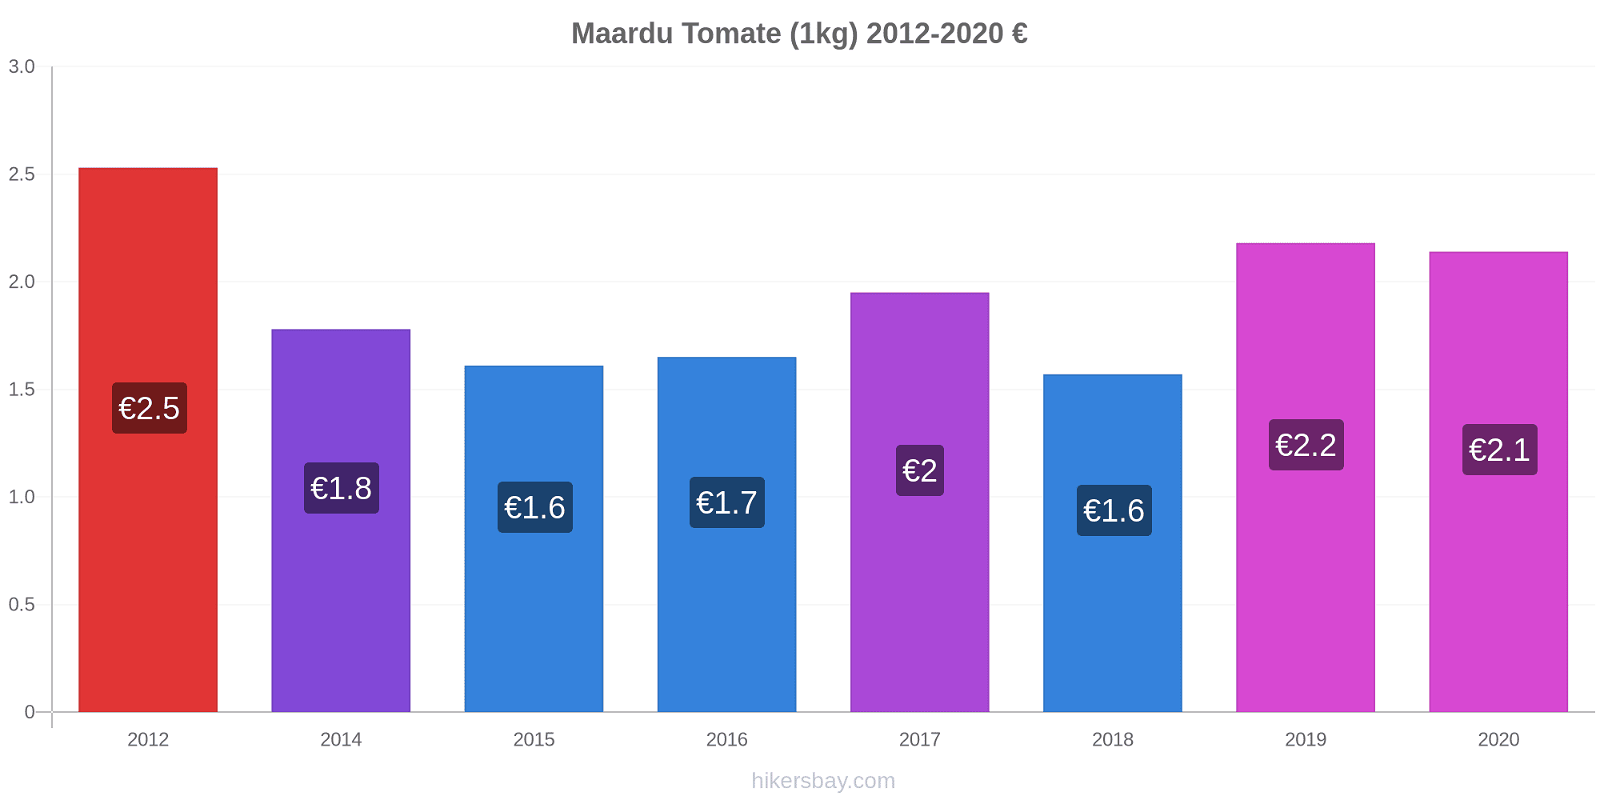 Maardu variação de preço Tomate (1kg) hikersbay.com